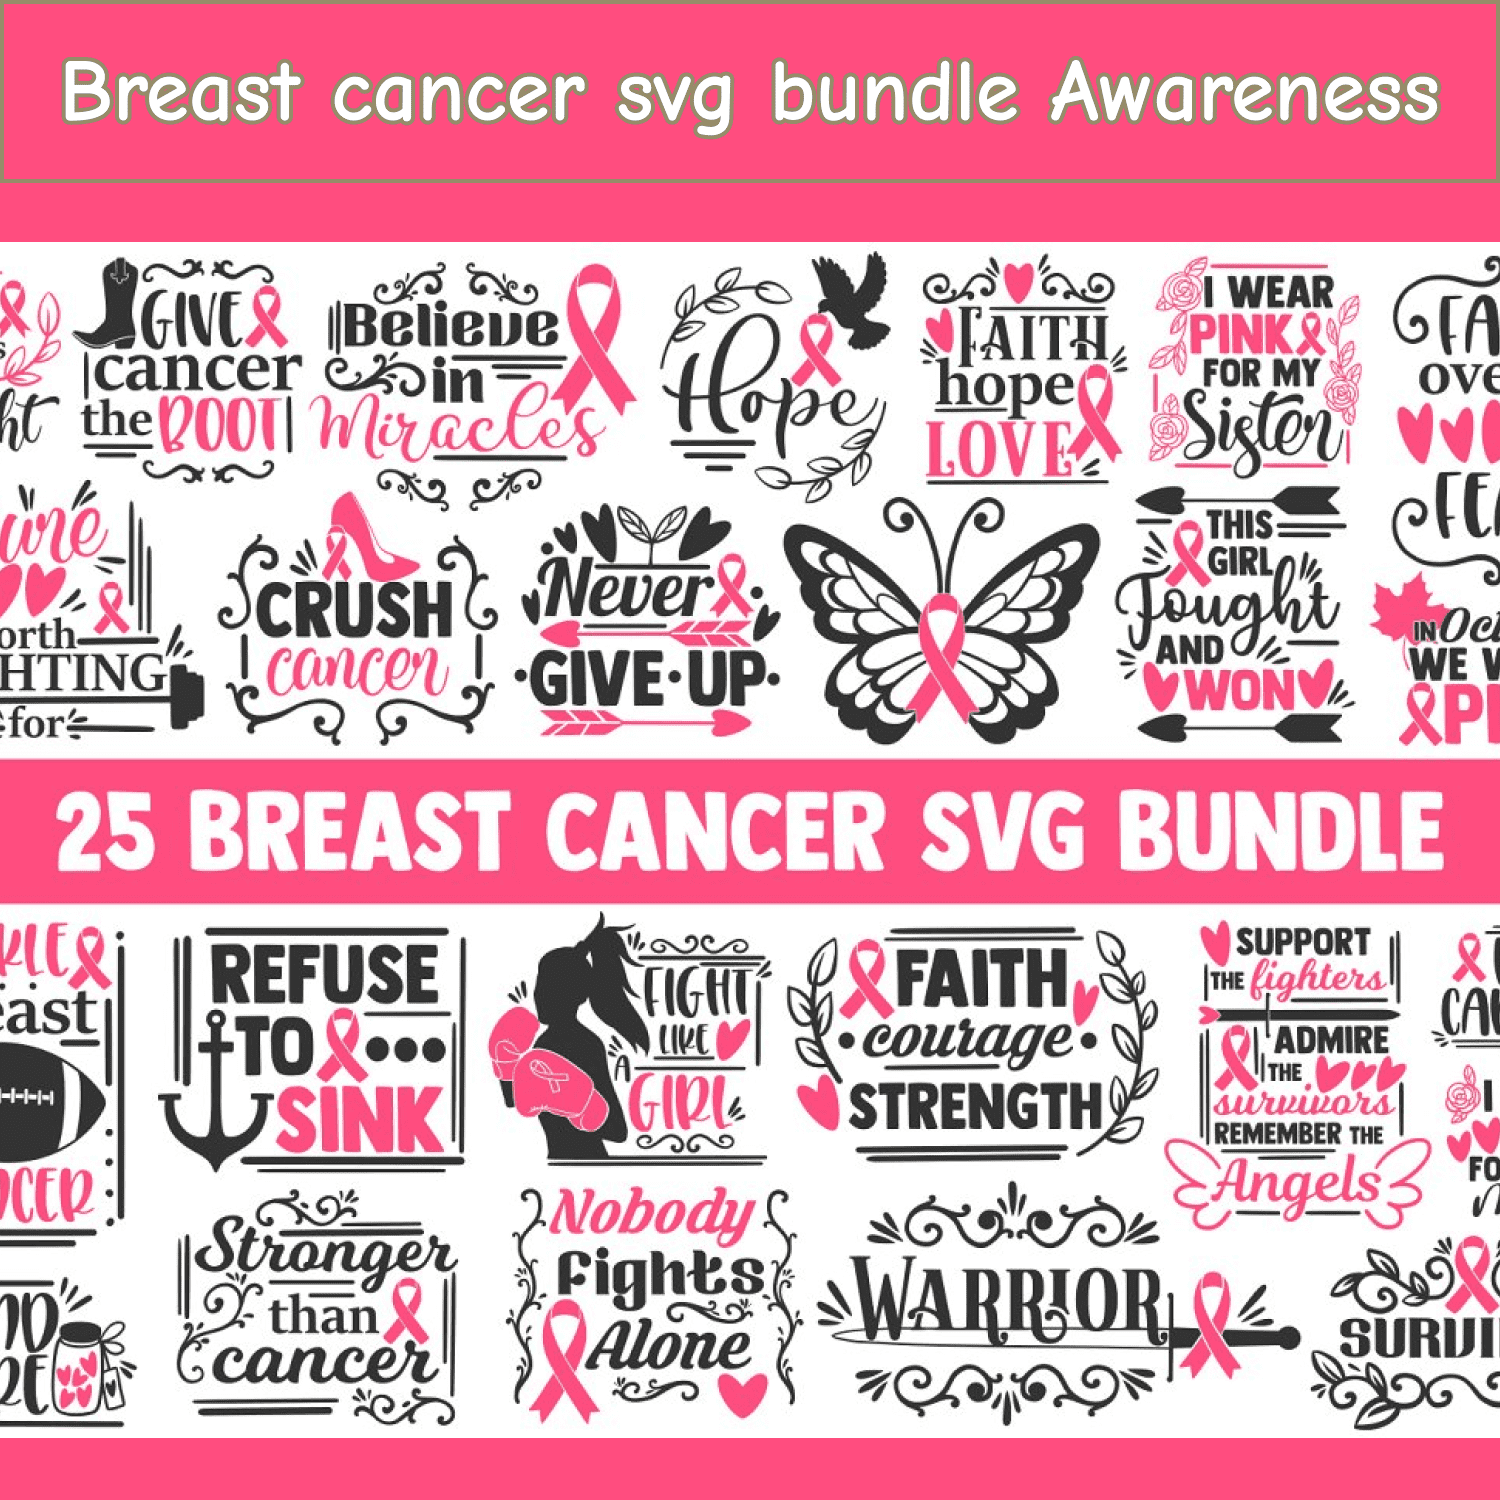 Breast cancer svg bundle Awareness cover.